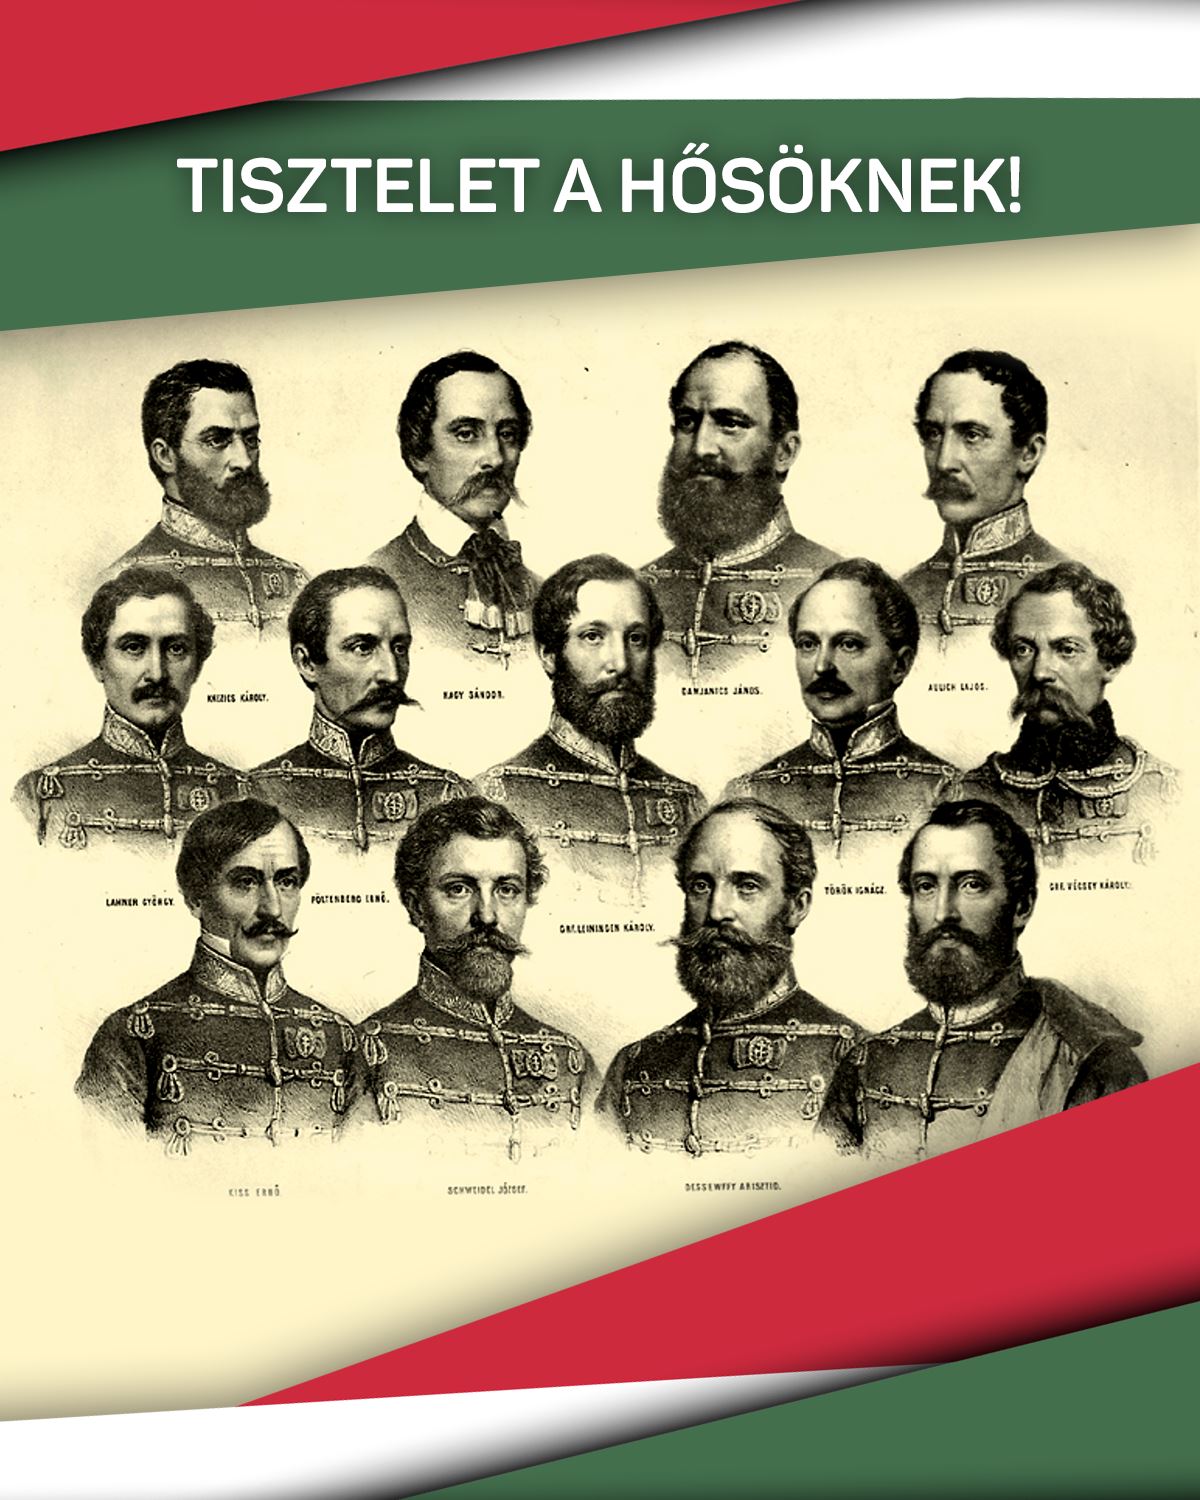 Az aradi vértanúk emléknapján tisztelettel emlékezünk azokra, akik az életüket áldozták a magyar szabadságért. Tisztelet a Hősöknek!